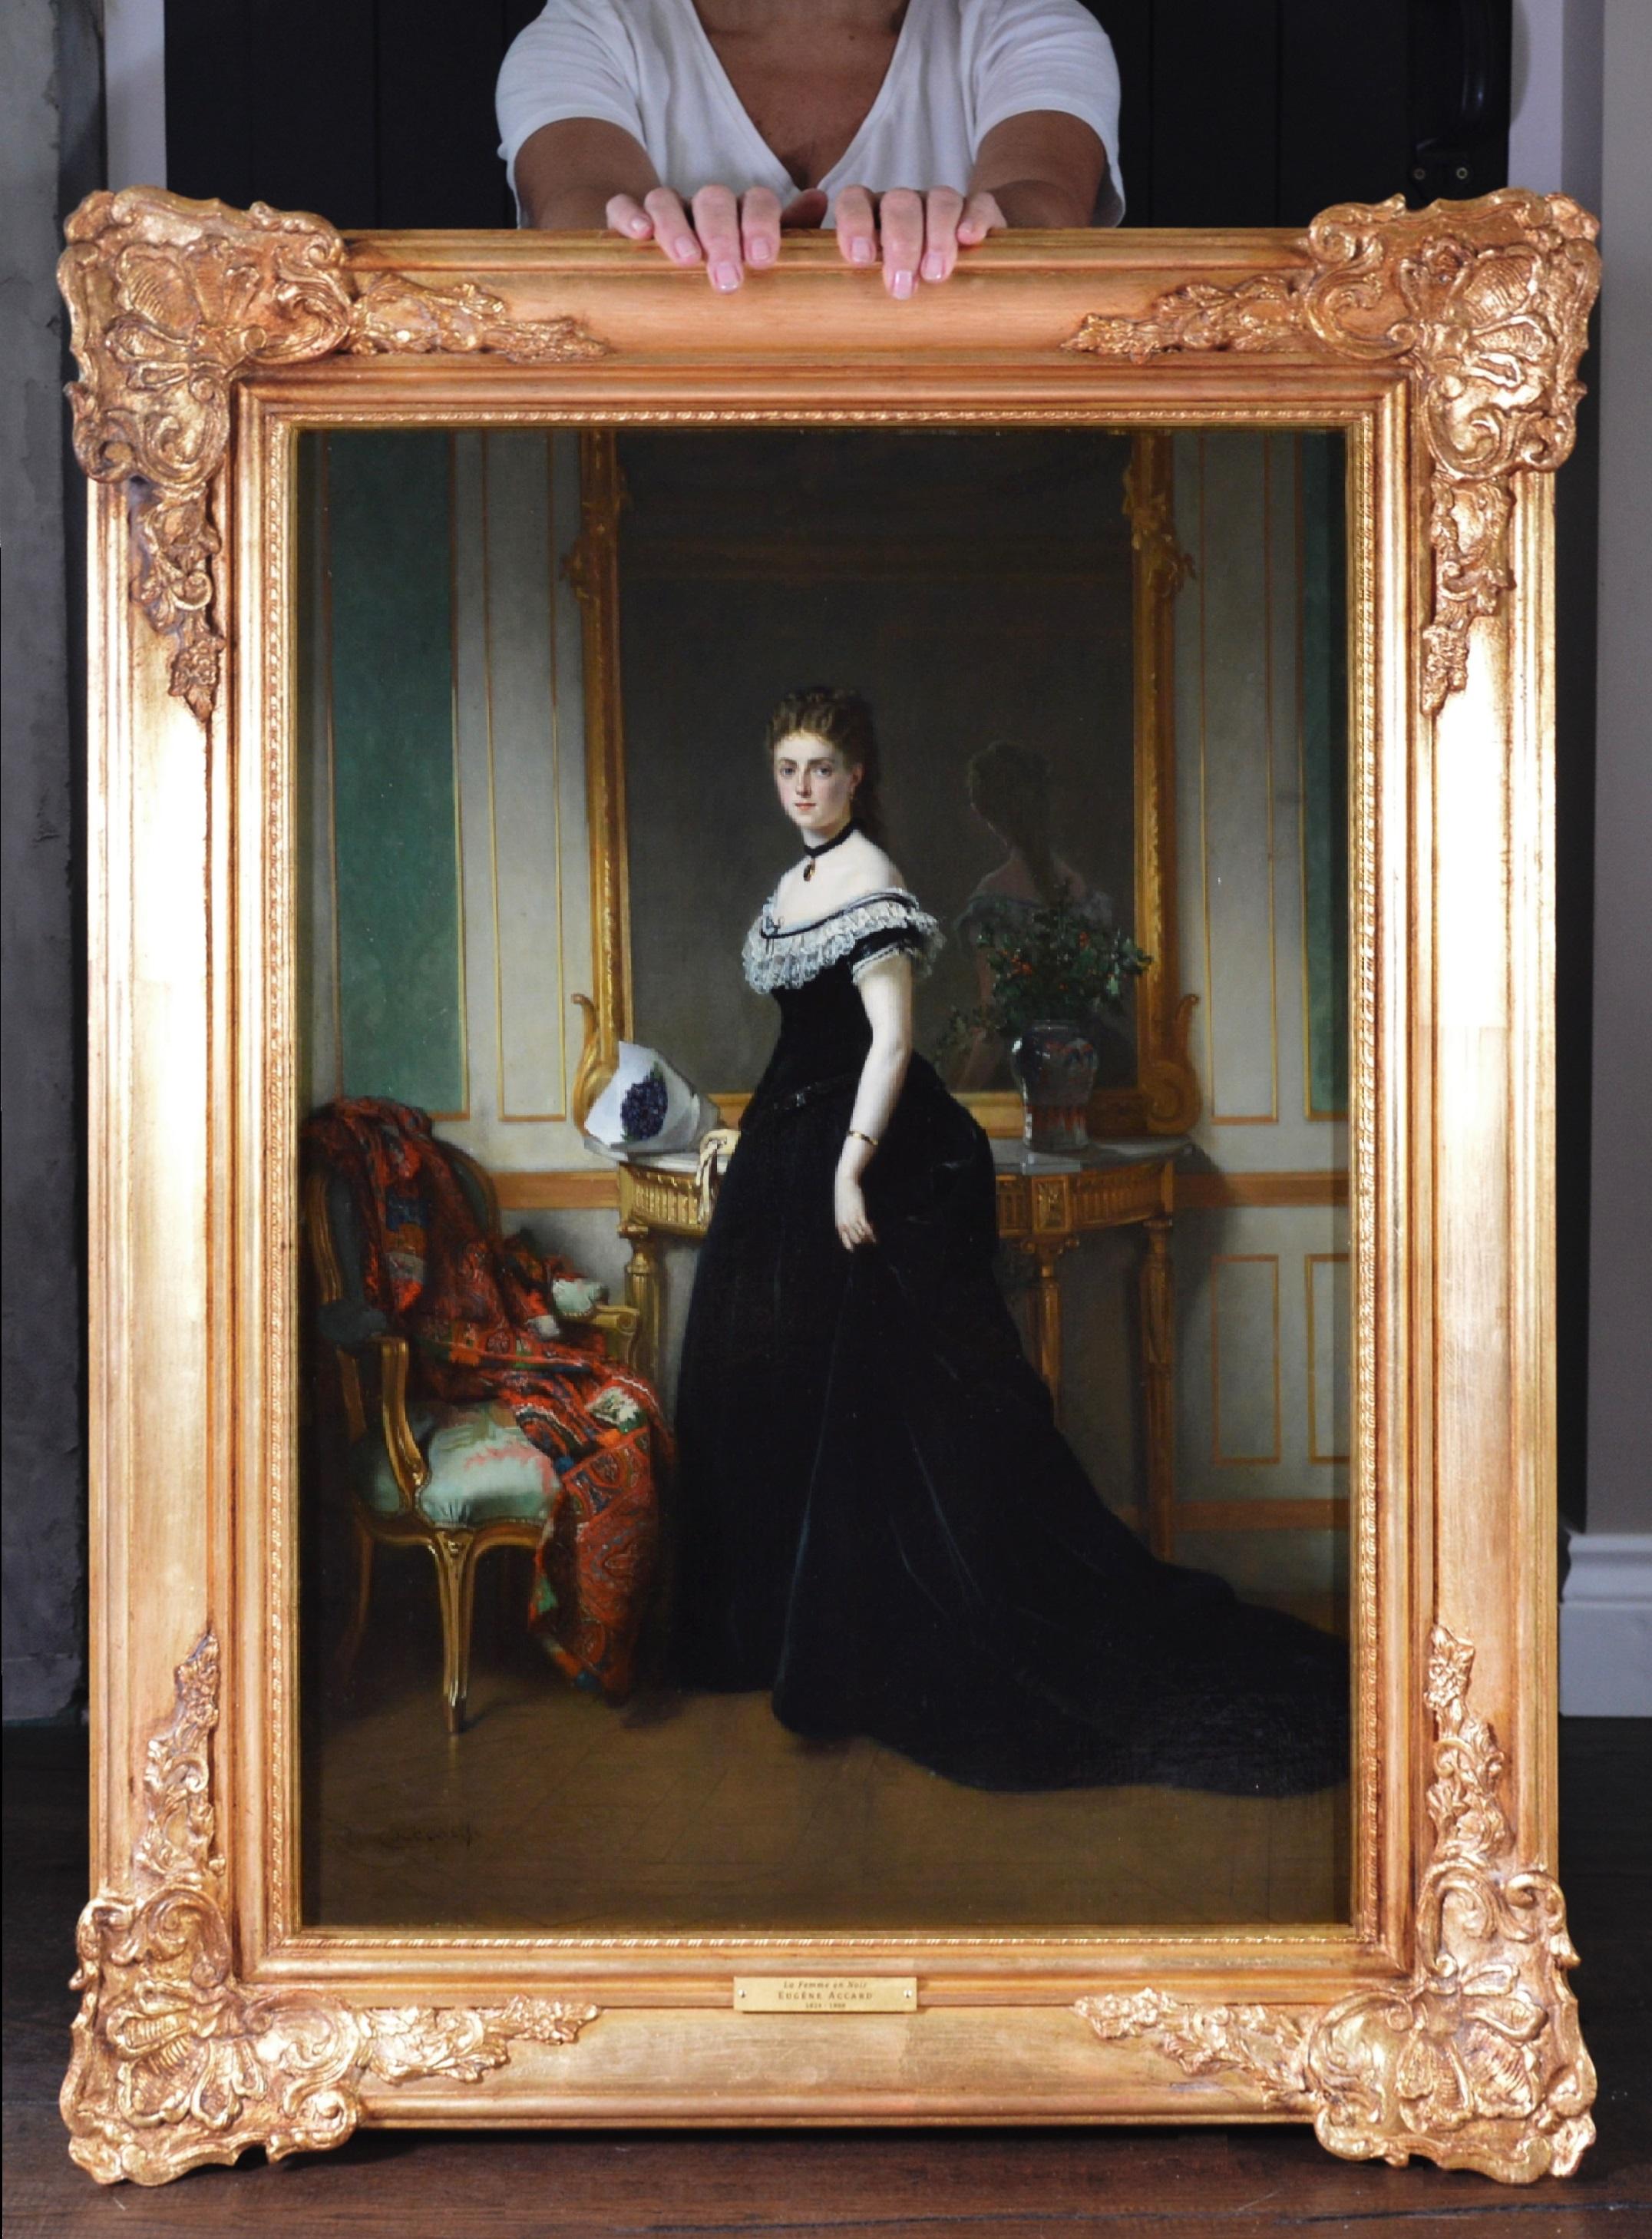 Eugene Accard Portrait Painting - La Femme en Noir - Large 19th Century French Belle Epoque Oil Painting Portrait